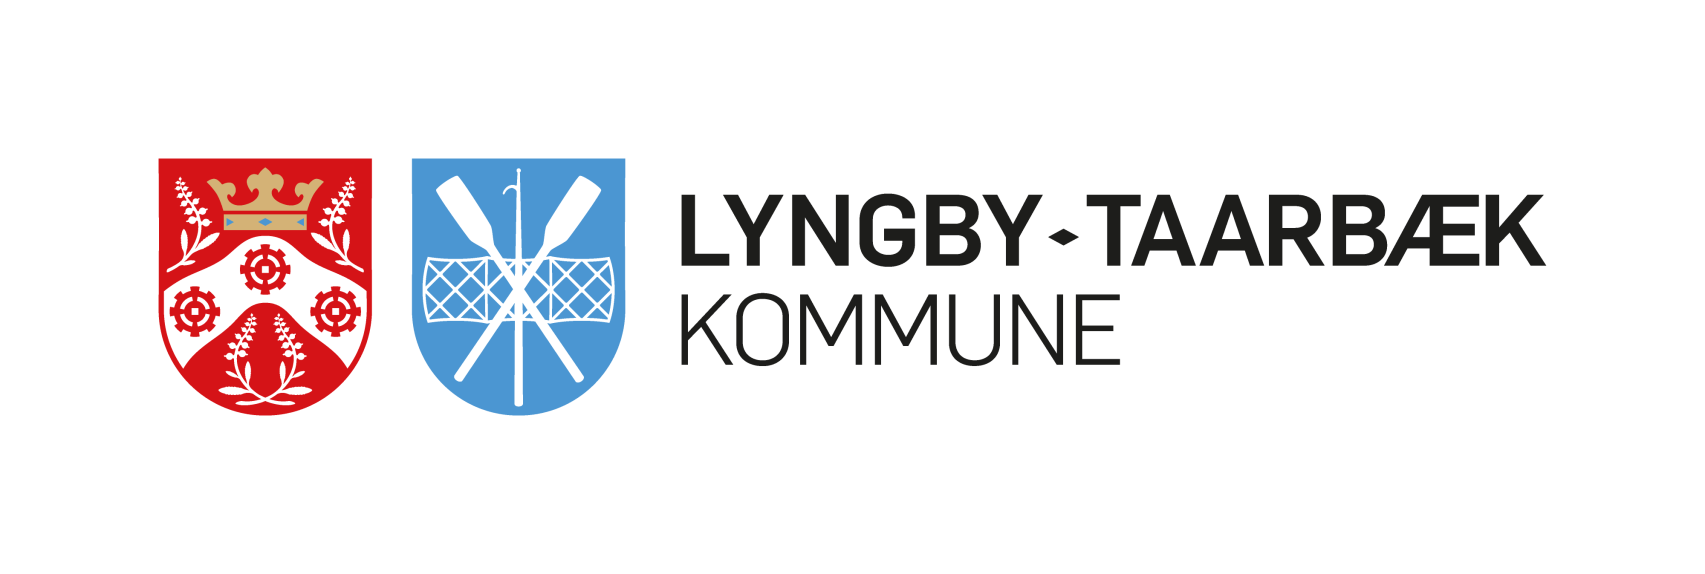 Lyngby-Taarbæk Kommunes logo bestående, fra venstre mod højre, af byvåben fra Kongens Lyngby, byvåben fra Taarbæk og til sidst navnetrækket